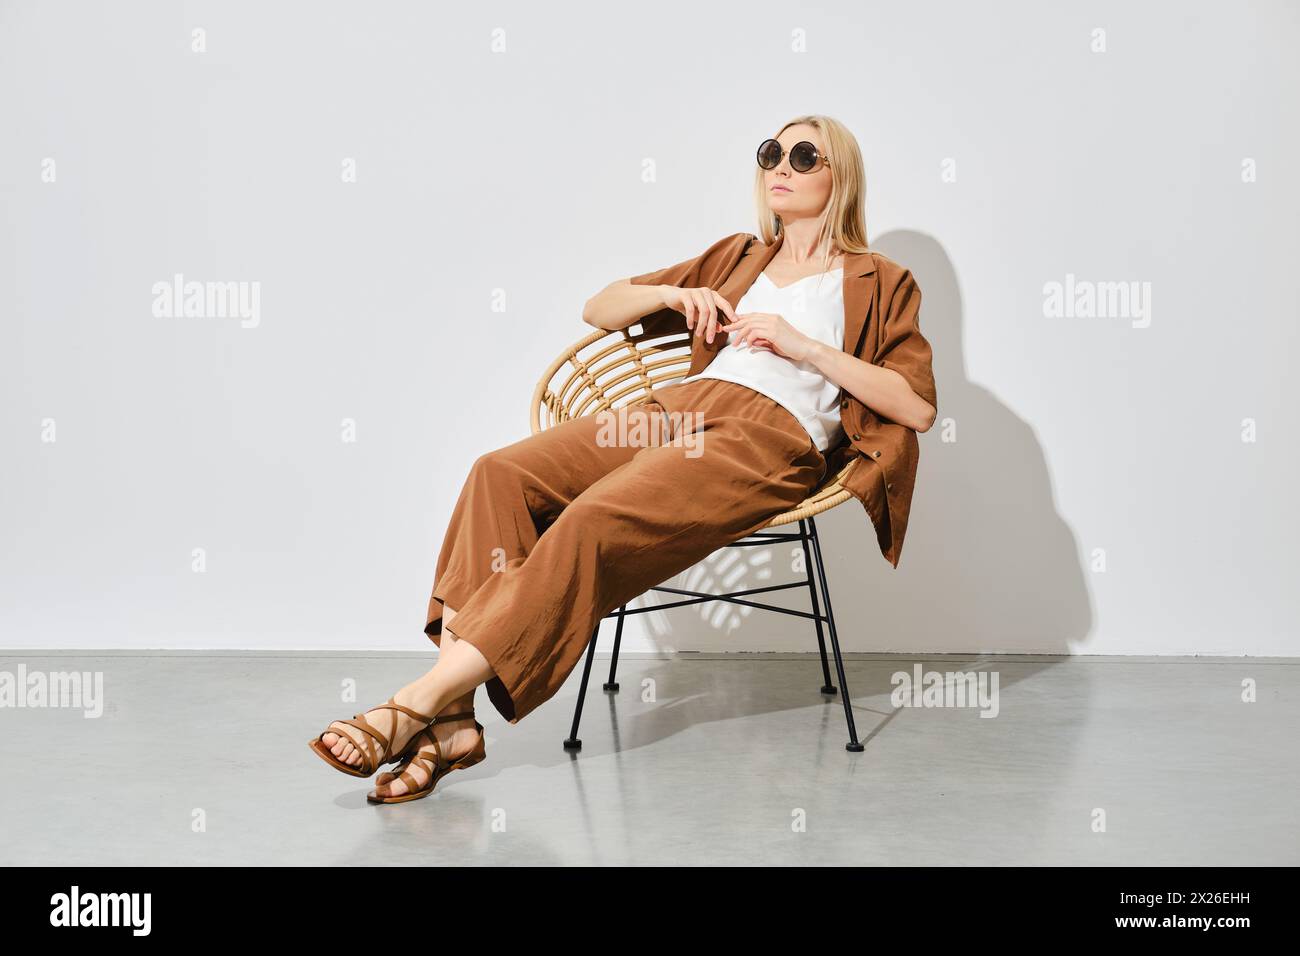 Una donna con un abito morbido si siede rilassata su una sedia in vimini in una stanza luminosa Foto Stock